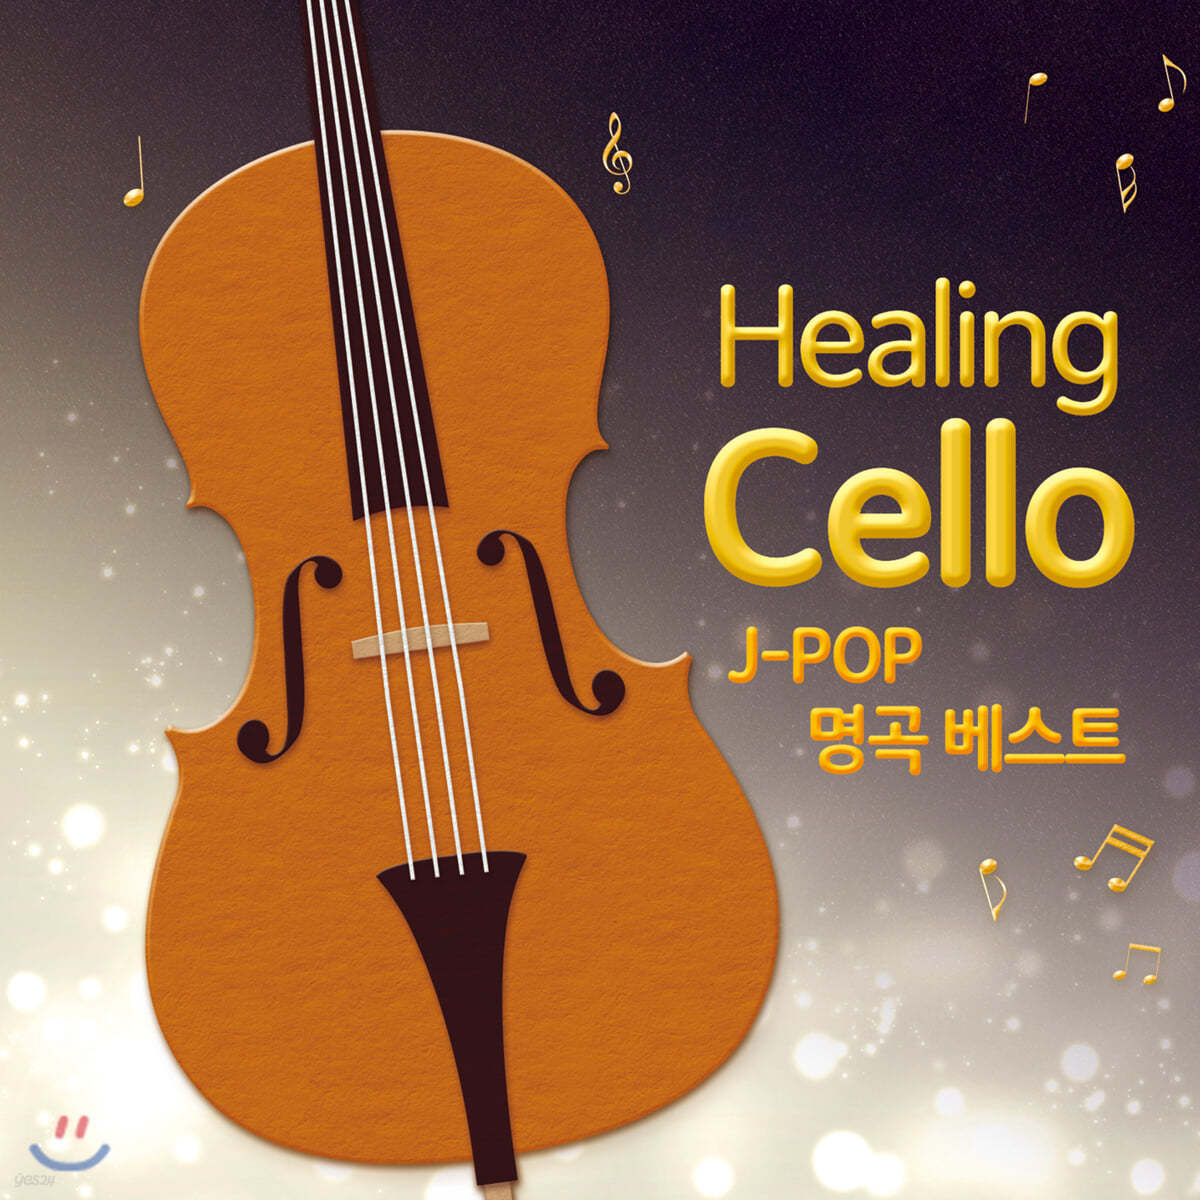 힐링 첼로 - J-Pop 명곡 베스트 (Healing Cello - J-POP Best)